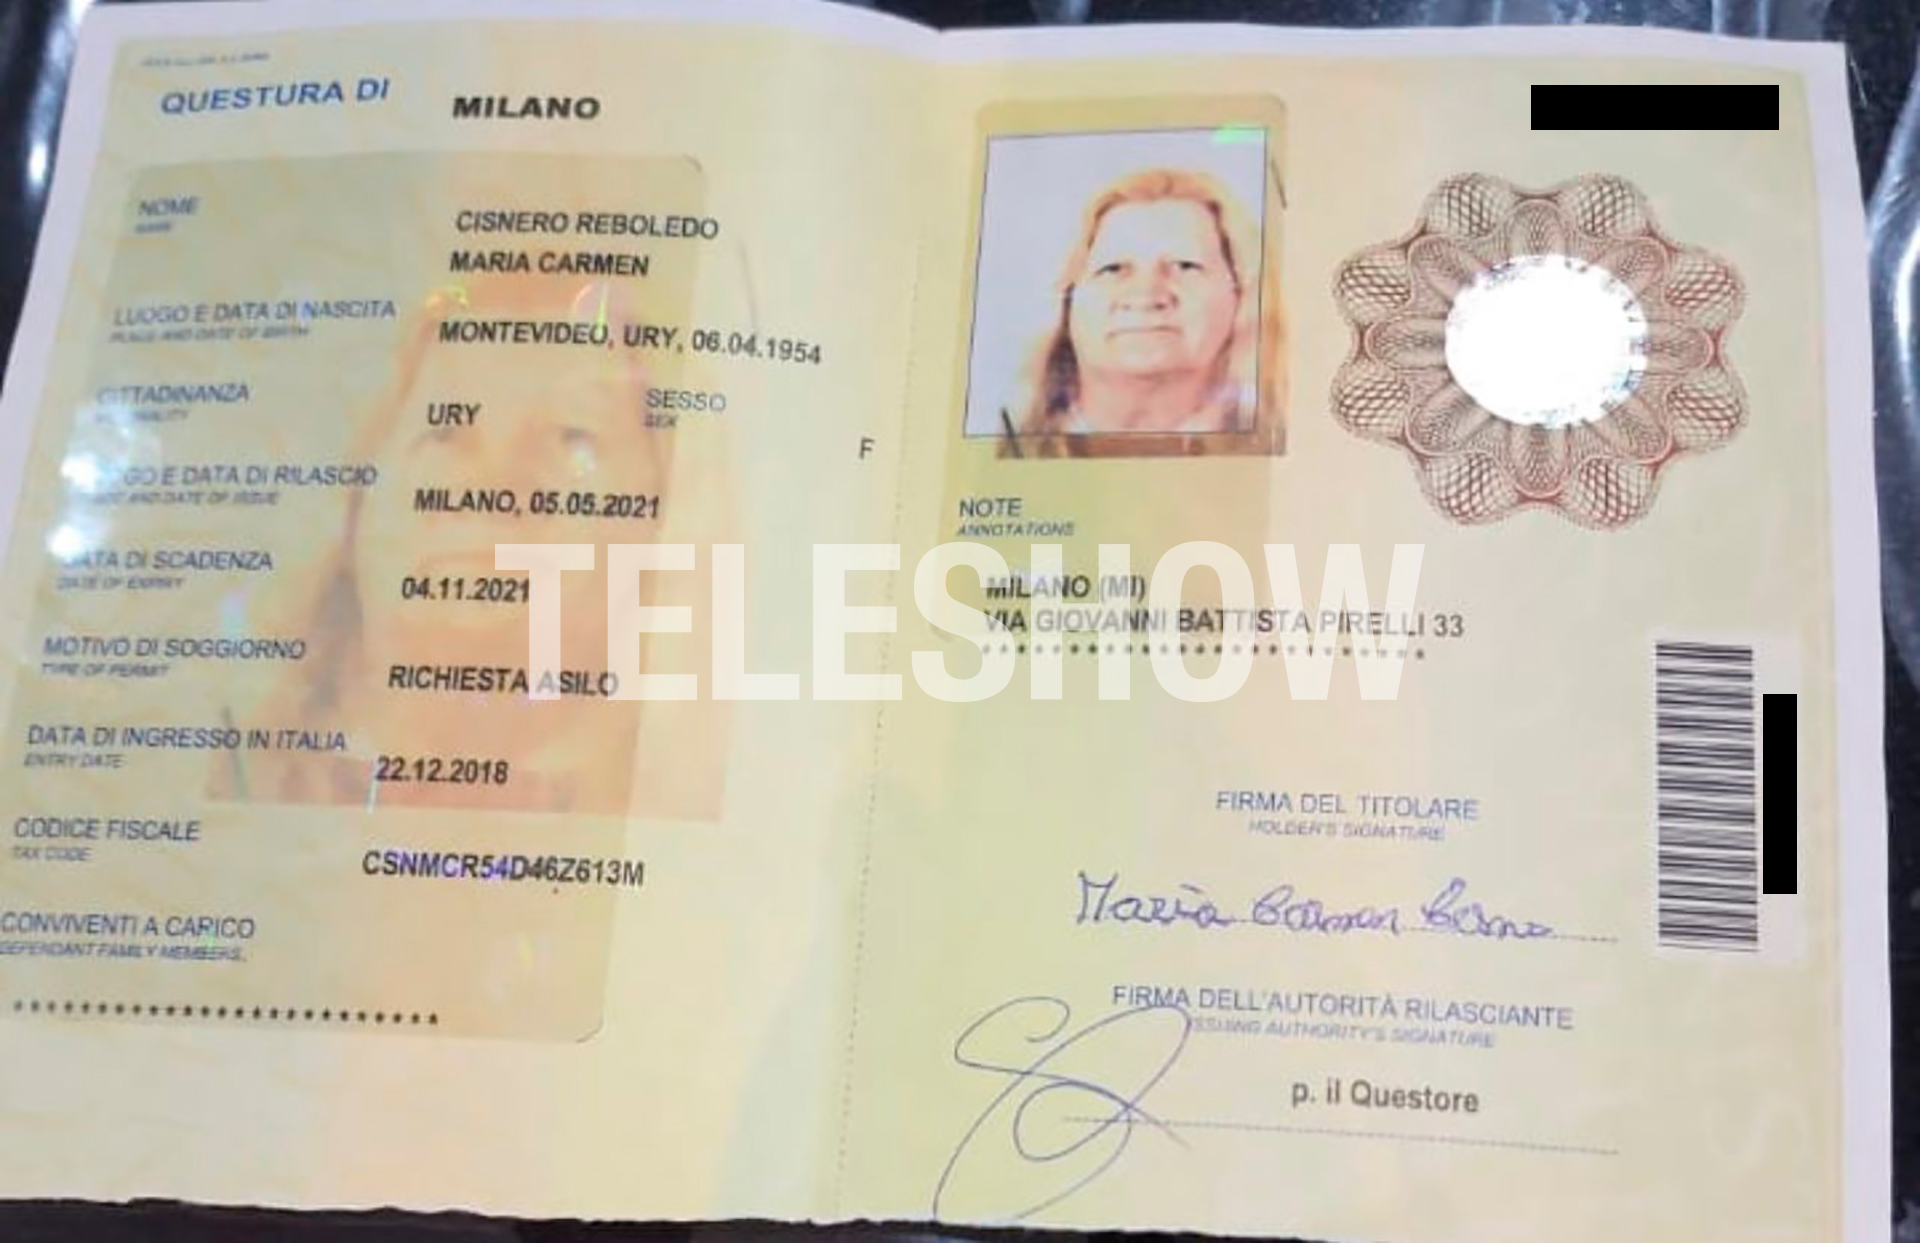 El pasaporte italiano de Carmen Reboledo, donde consta que pidió asilo político